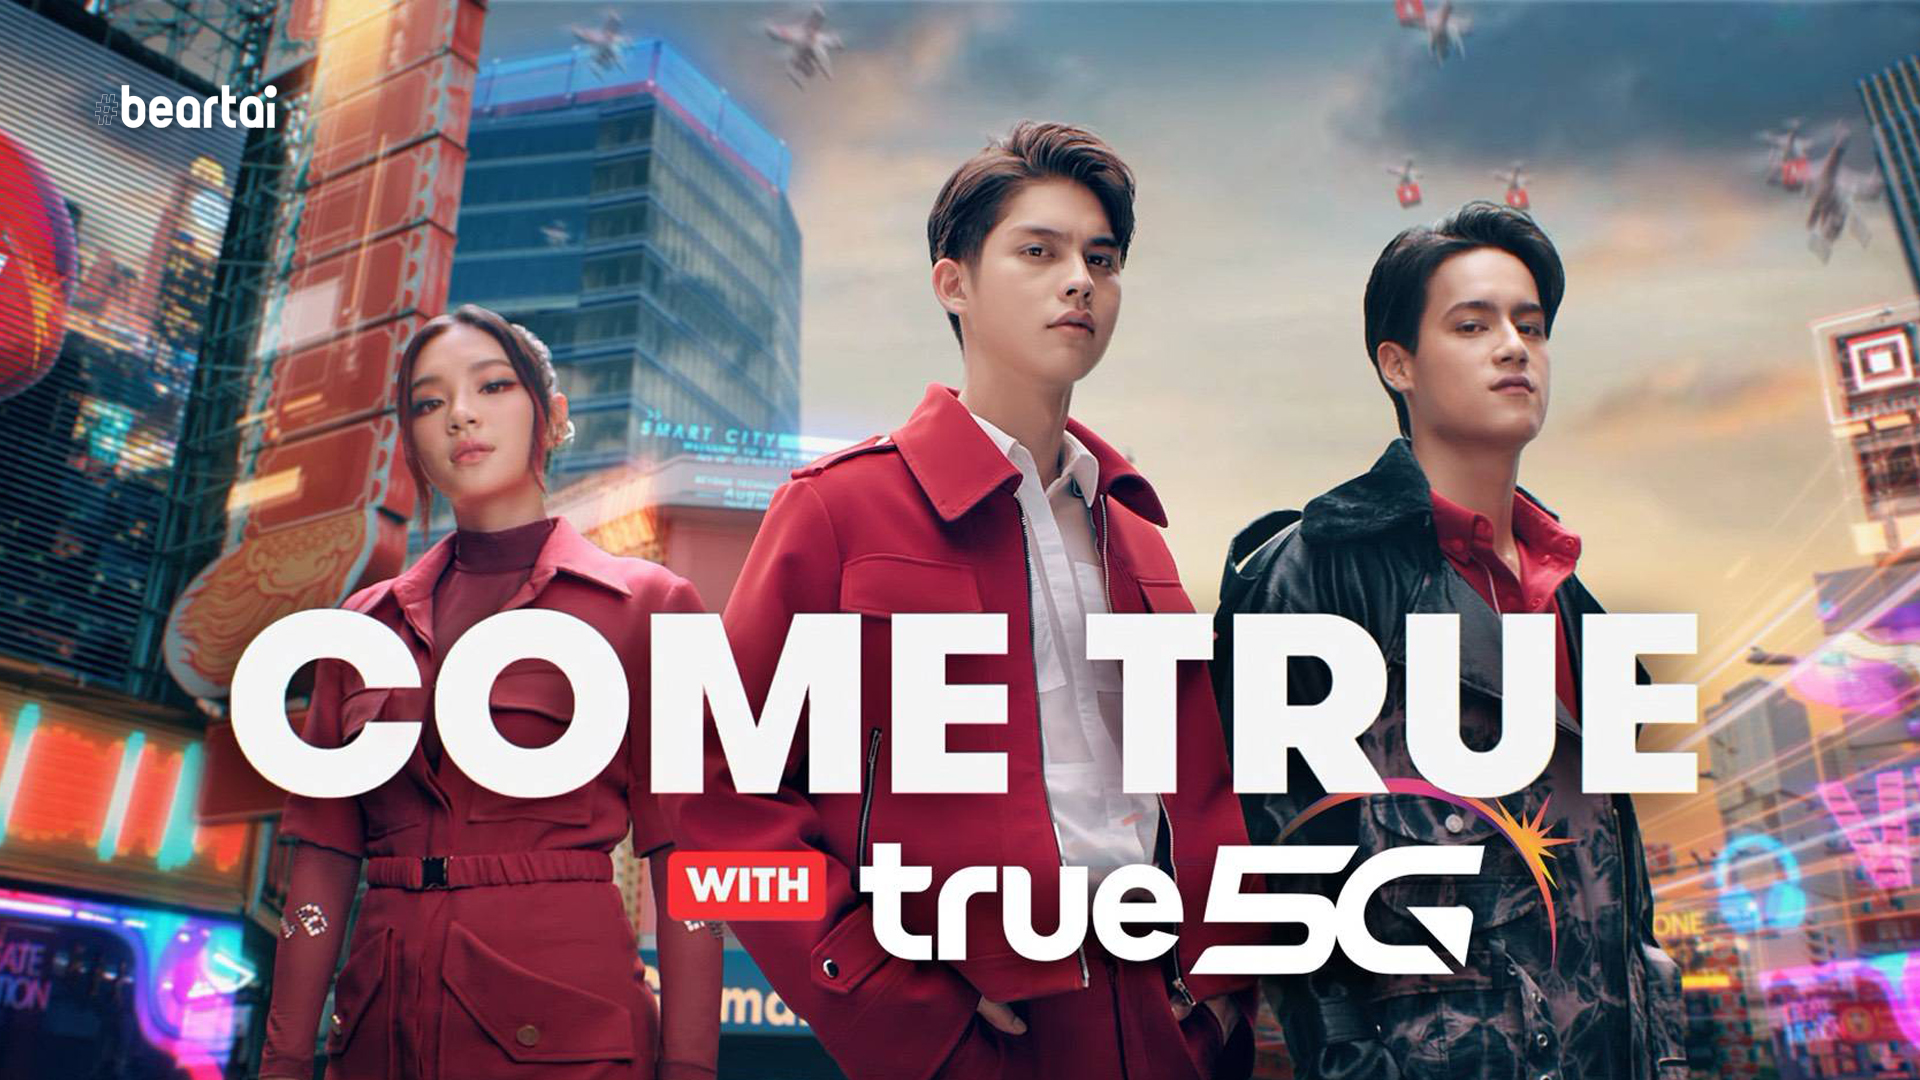 ทรู เนรมิตเมืองอัจฉริยะสุดล้ำ สะท้อนภาพผู้นำ 5G เมืองไทย ผ่านโฆษณาชุดใหม่ ‘Come True with TRUE 5G’